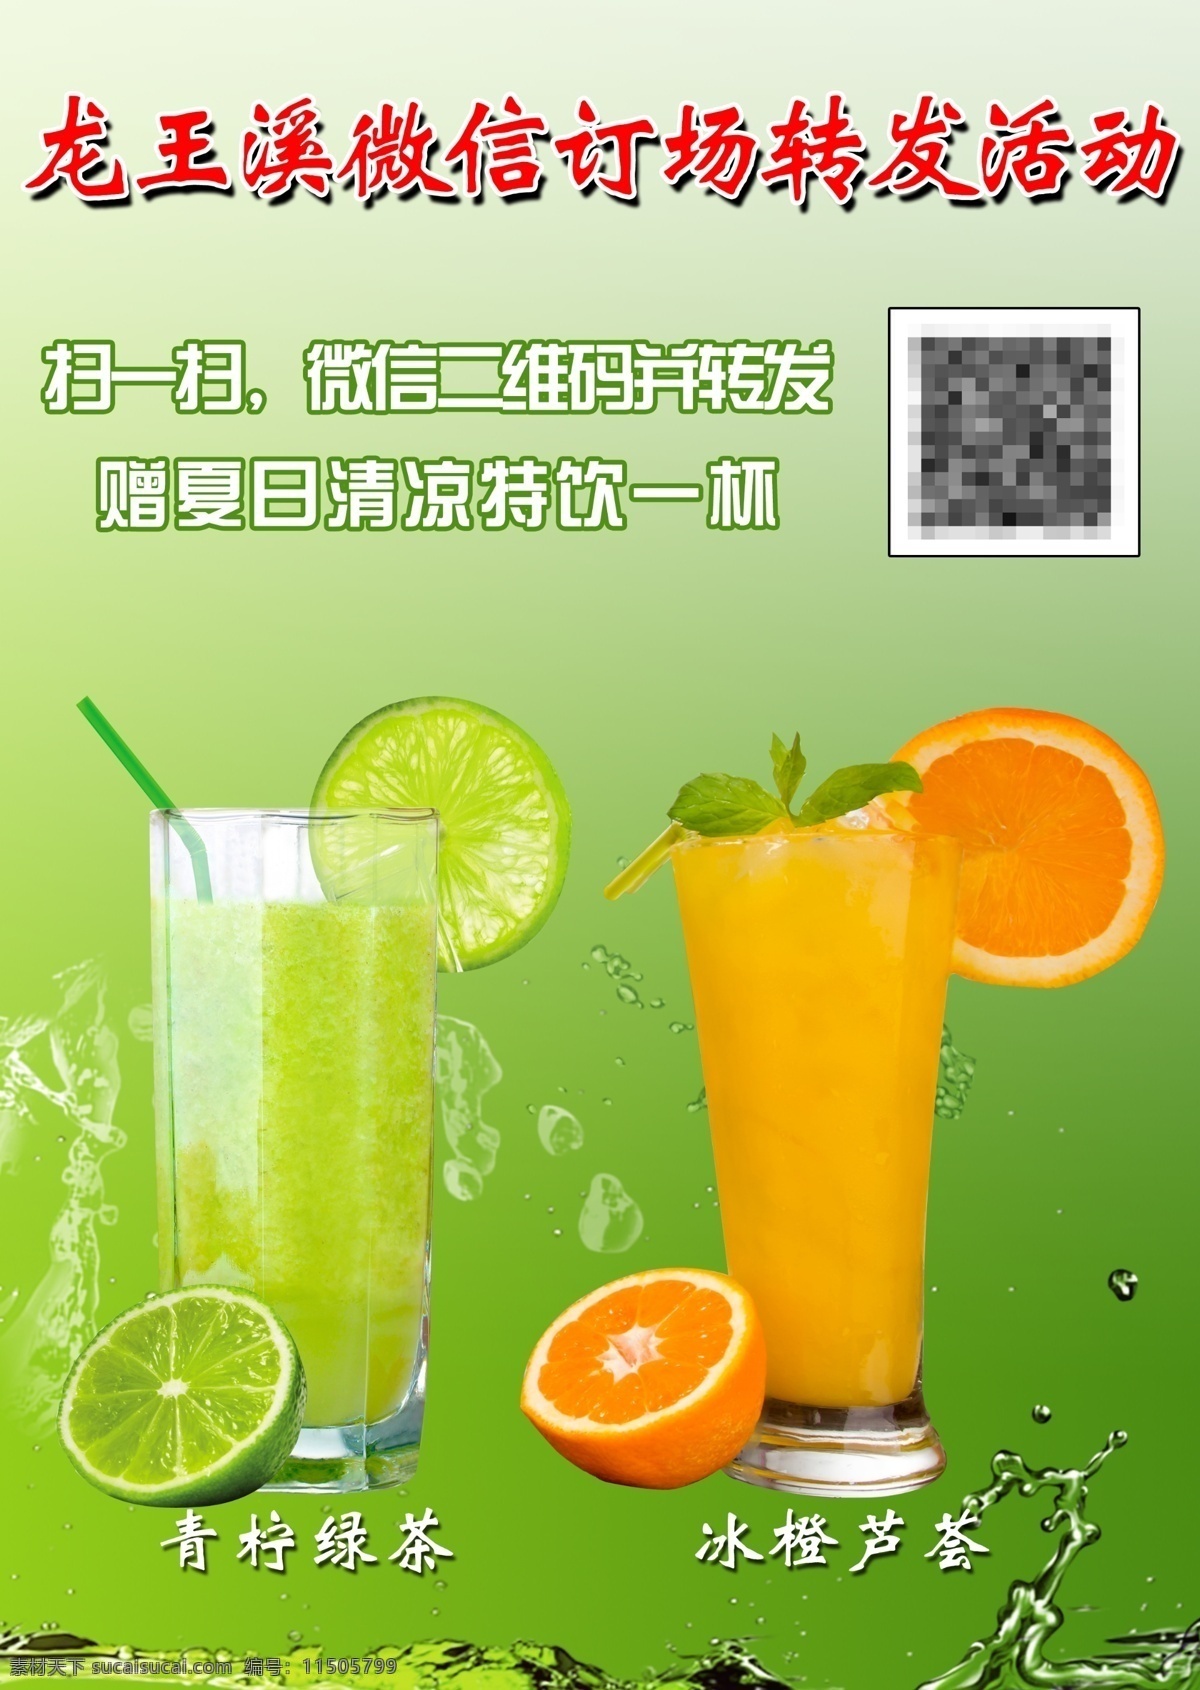 微 信 订 场 转发 活动 扫二维码 冰橙芦荟 青柠绿茶 原创设计 原创海报